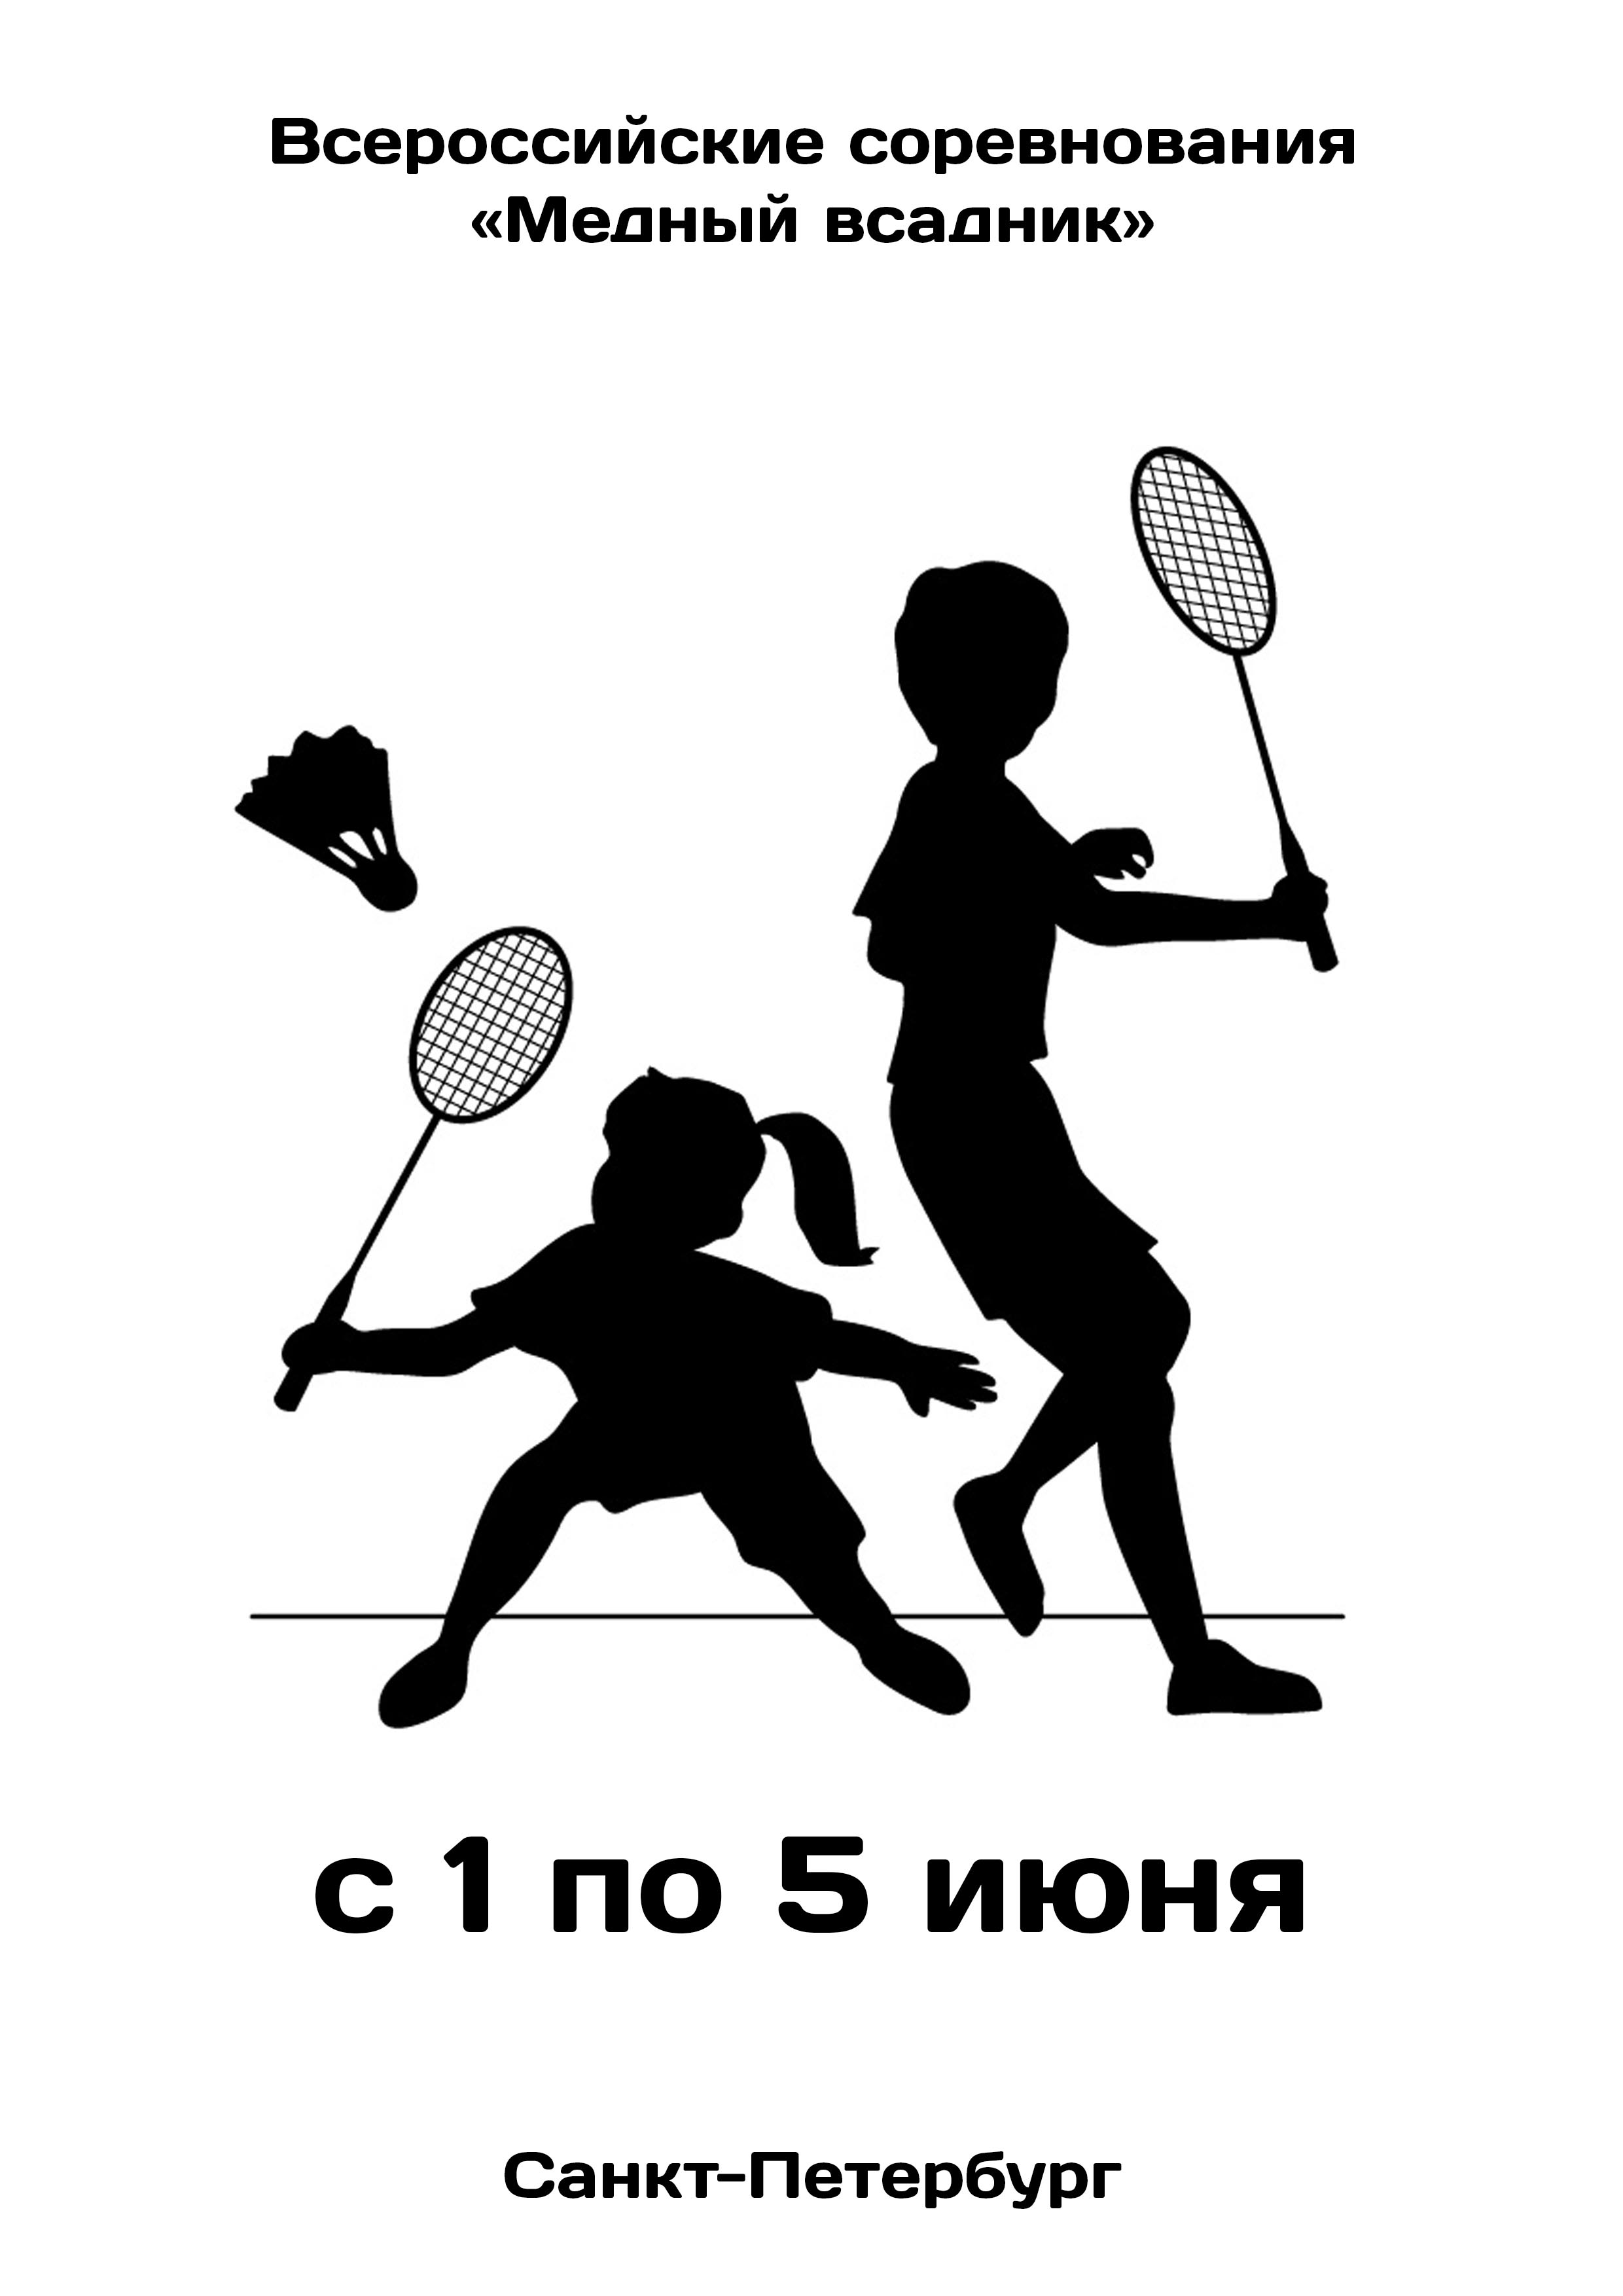 Всероссийские соревнования «Медный всадник»  по бадминтону 1  јуна
 2023  годину
 